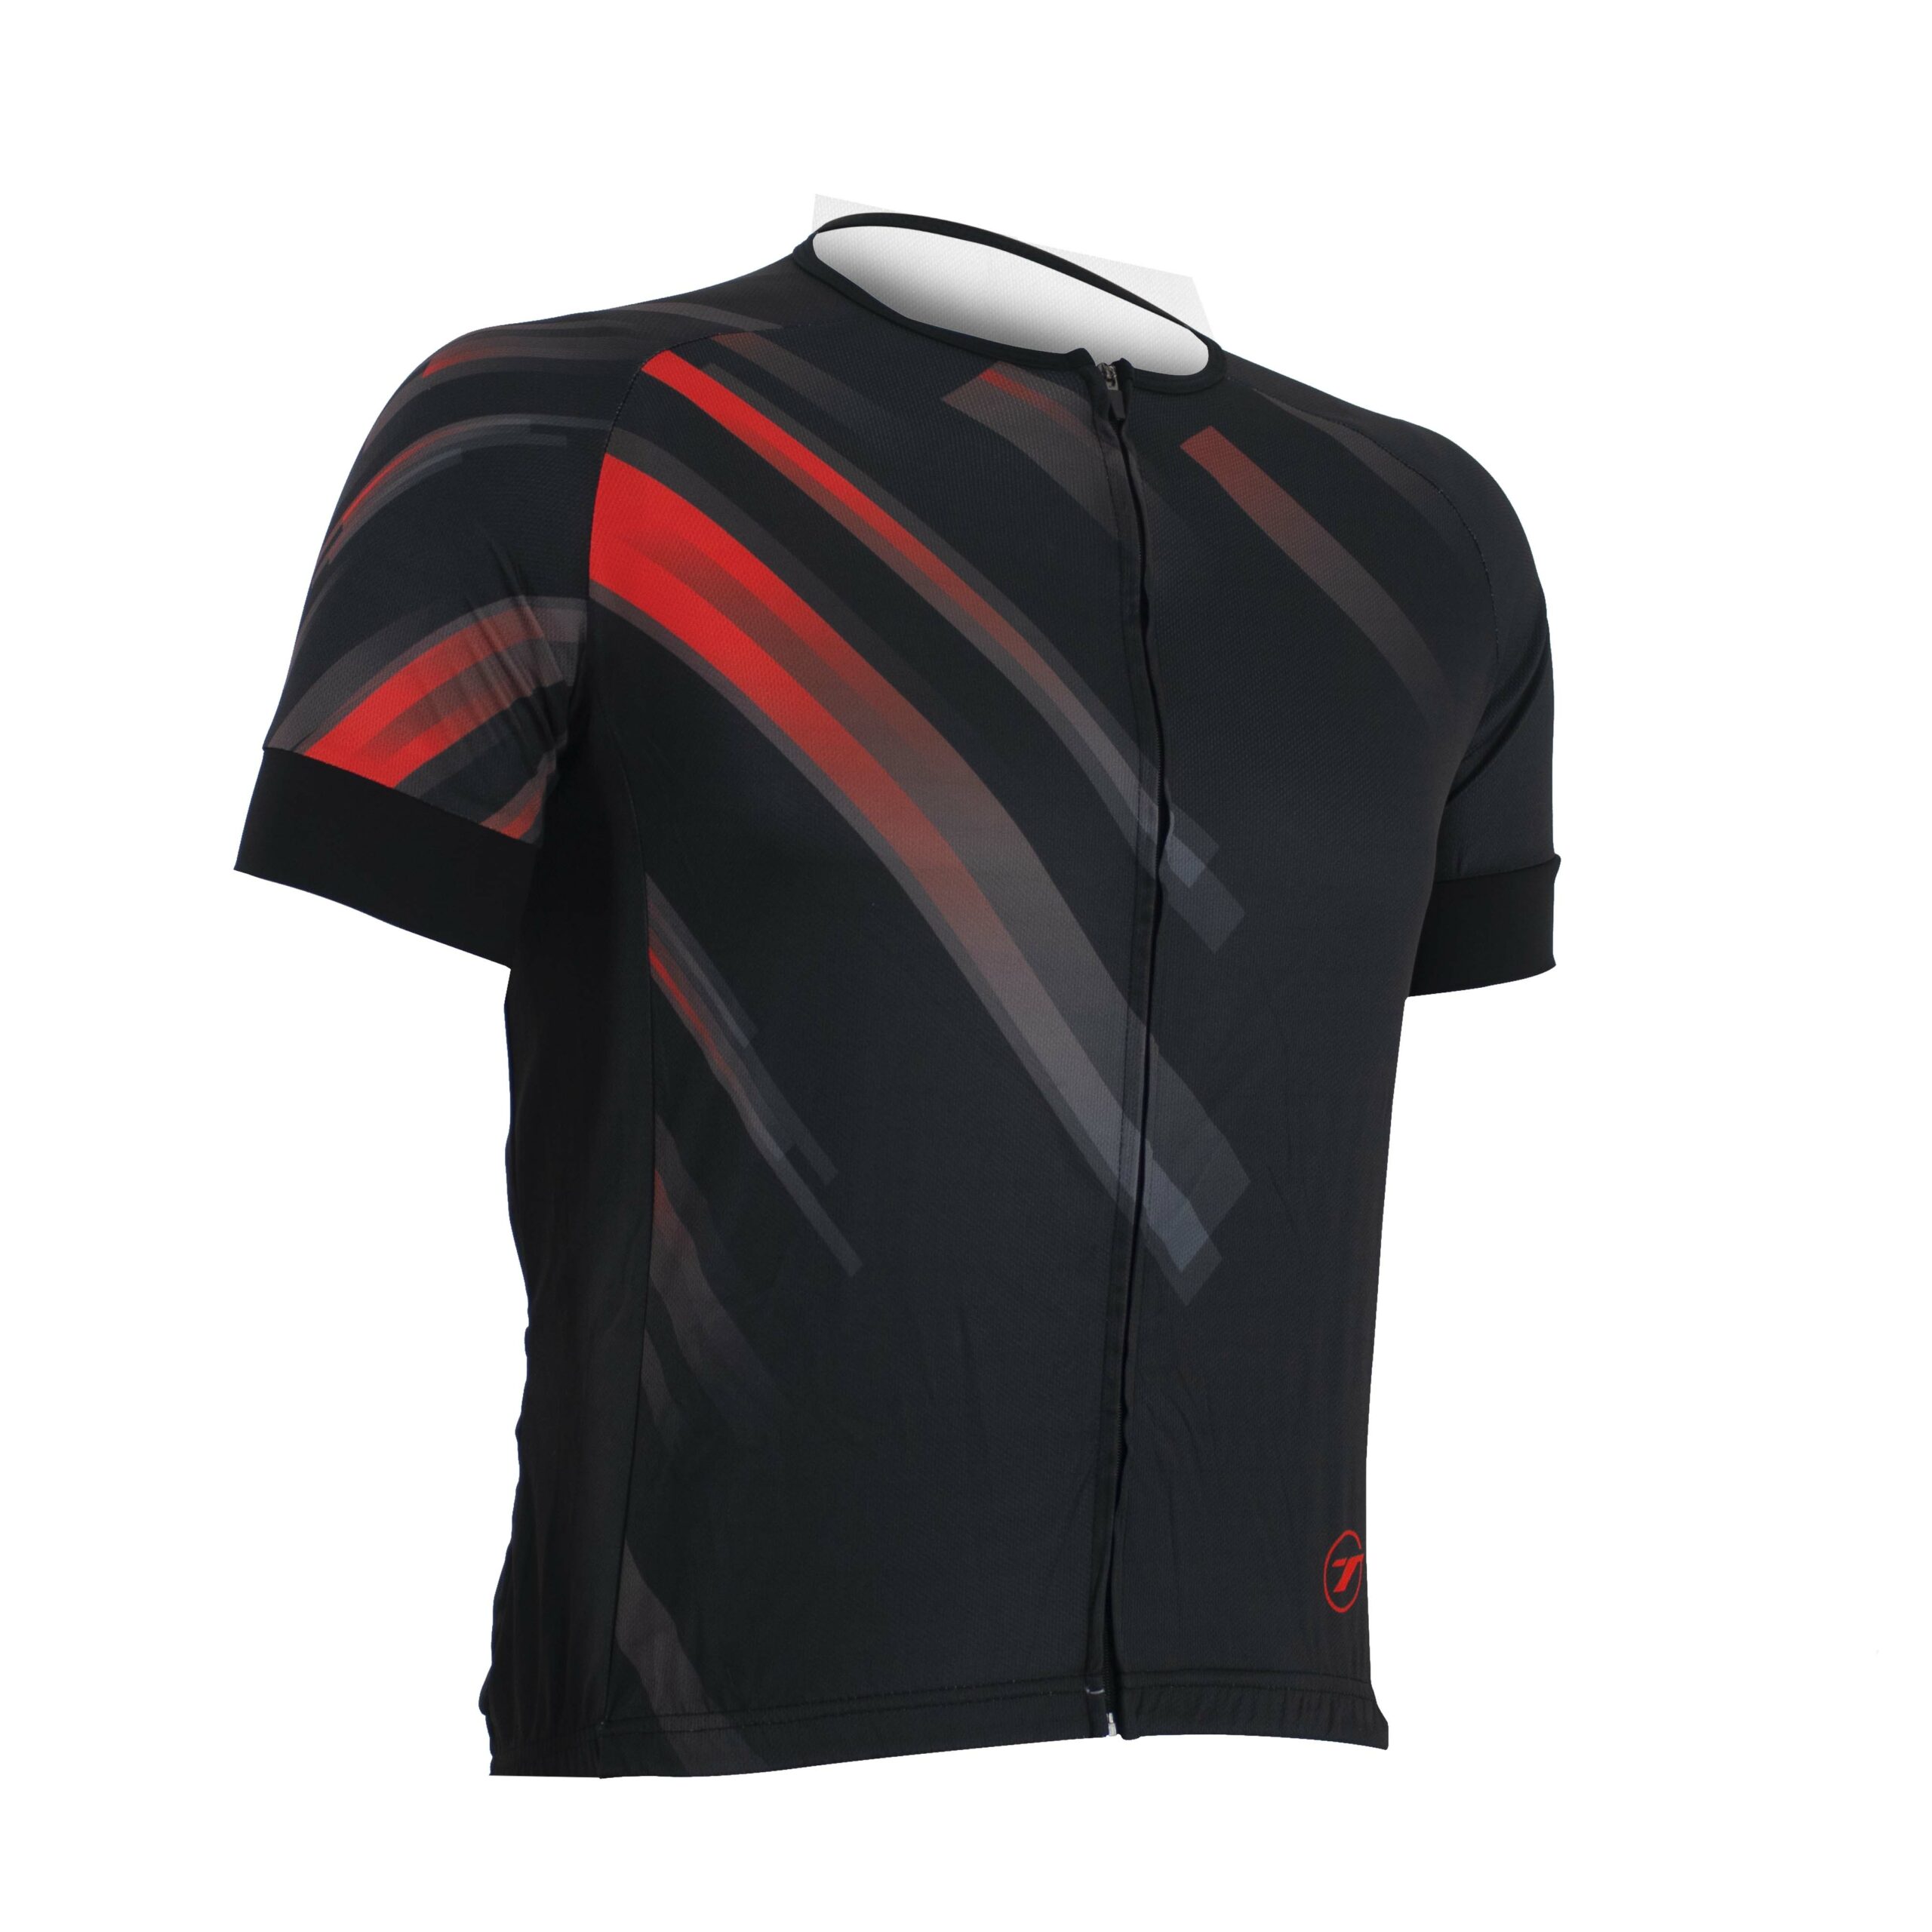 Camisa para ciclismo SUNNY | RIDE LINE - Preto/Vermelho, G